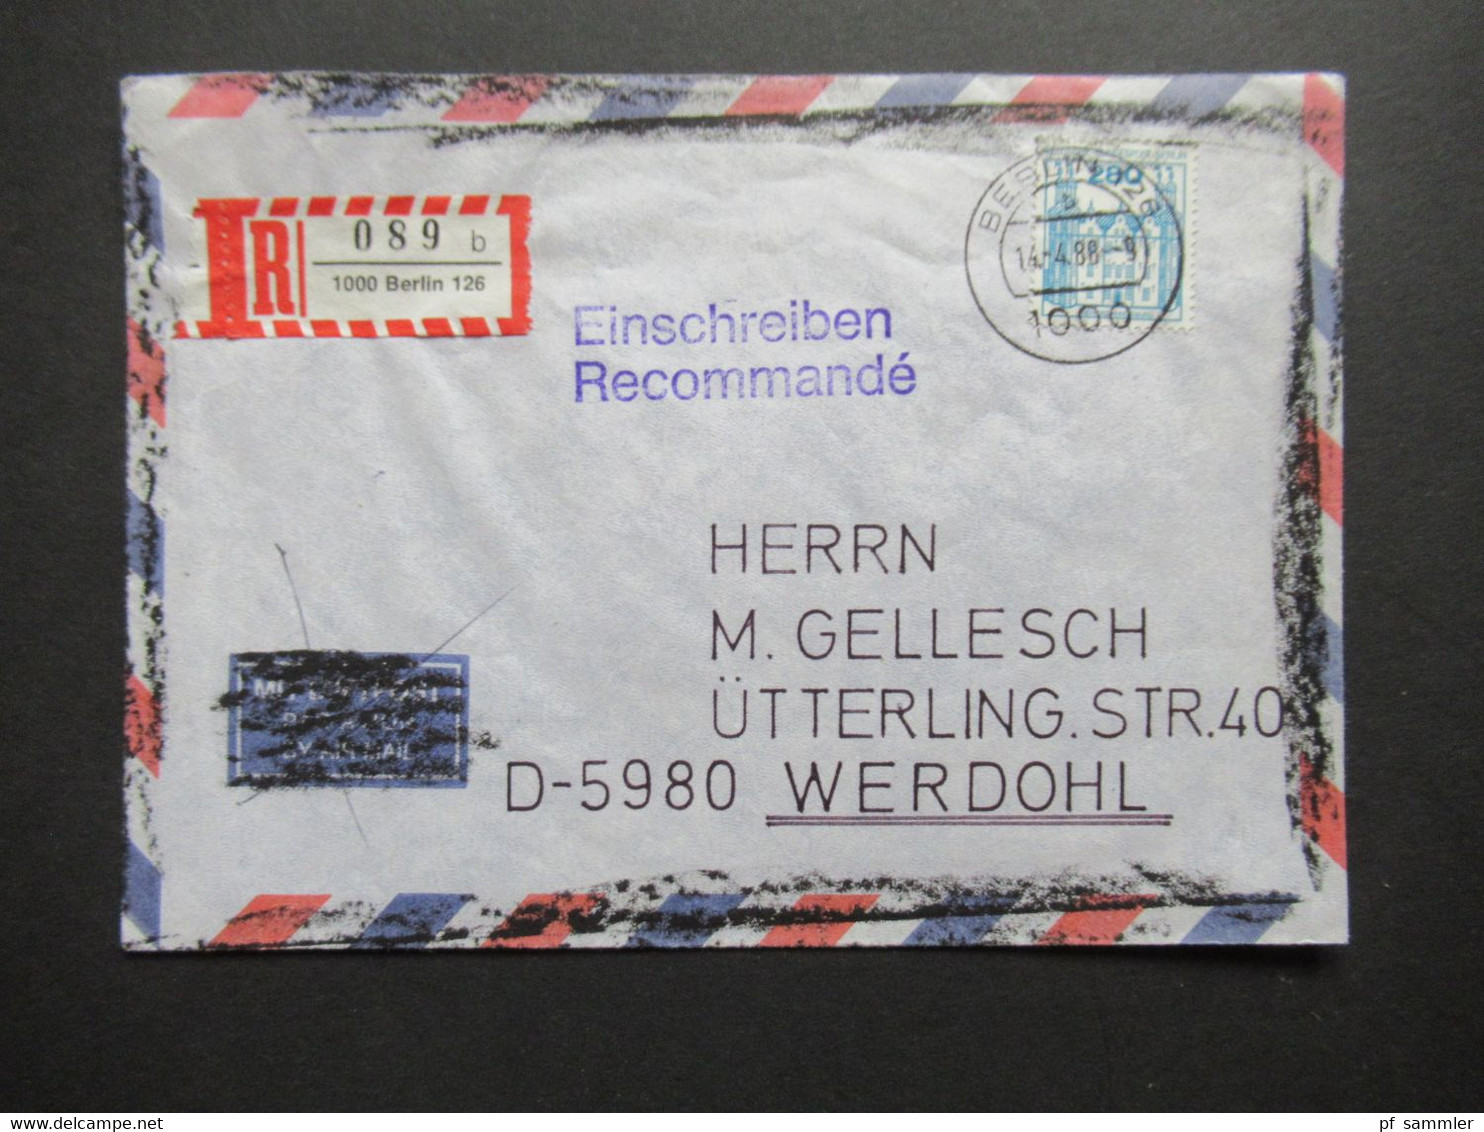 Berlin 1988 BuS Michel Nr. 676 EF Einschreiben Recommandé Berlin 126 - Werdohl Luftpost Umschlag Geschwärzt!! - Lettres & Documents